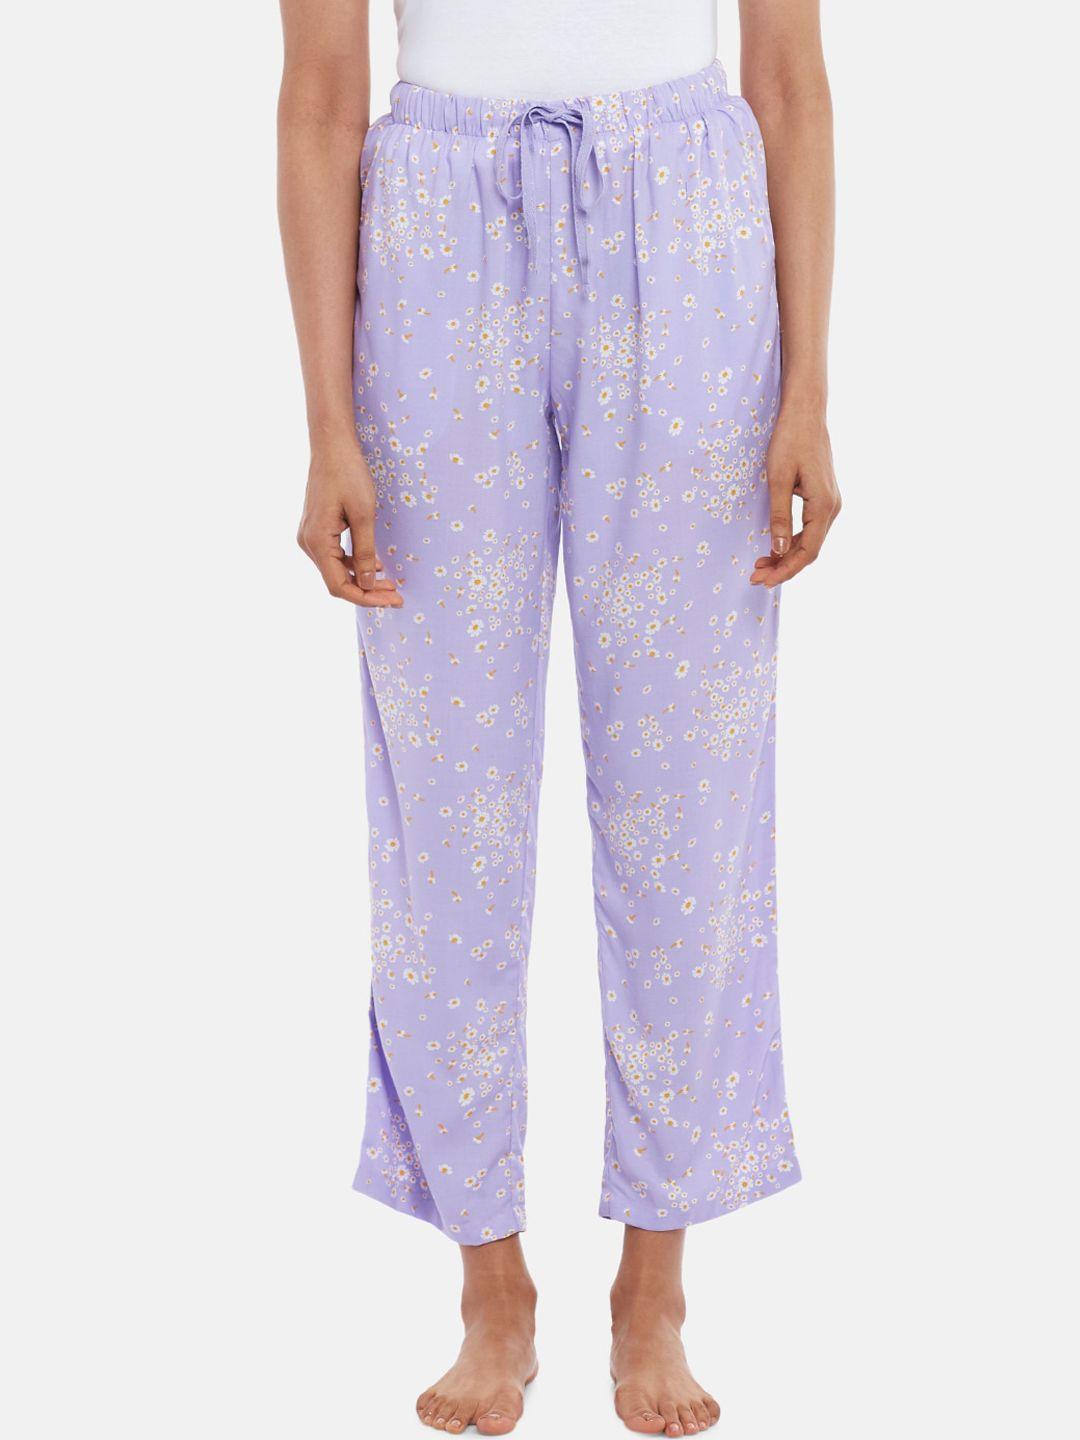 dreamz by pantaloons women purple printed lounge pants